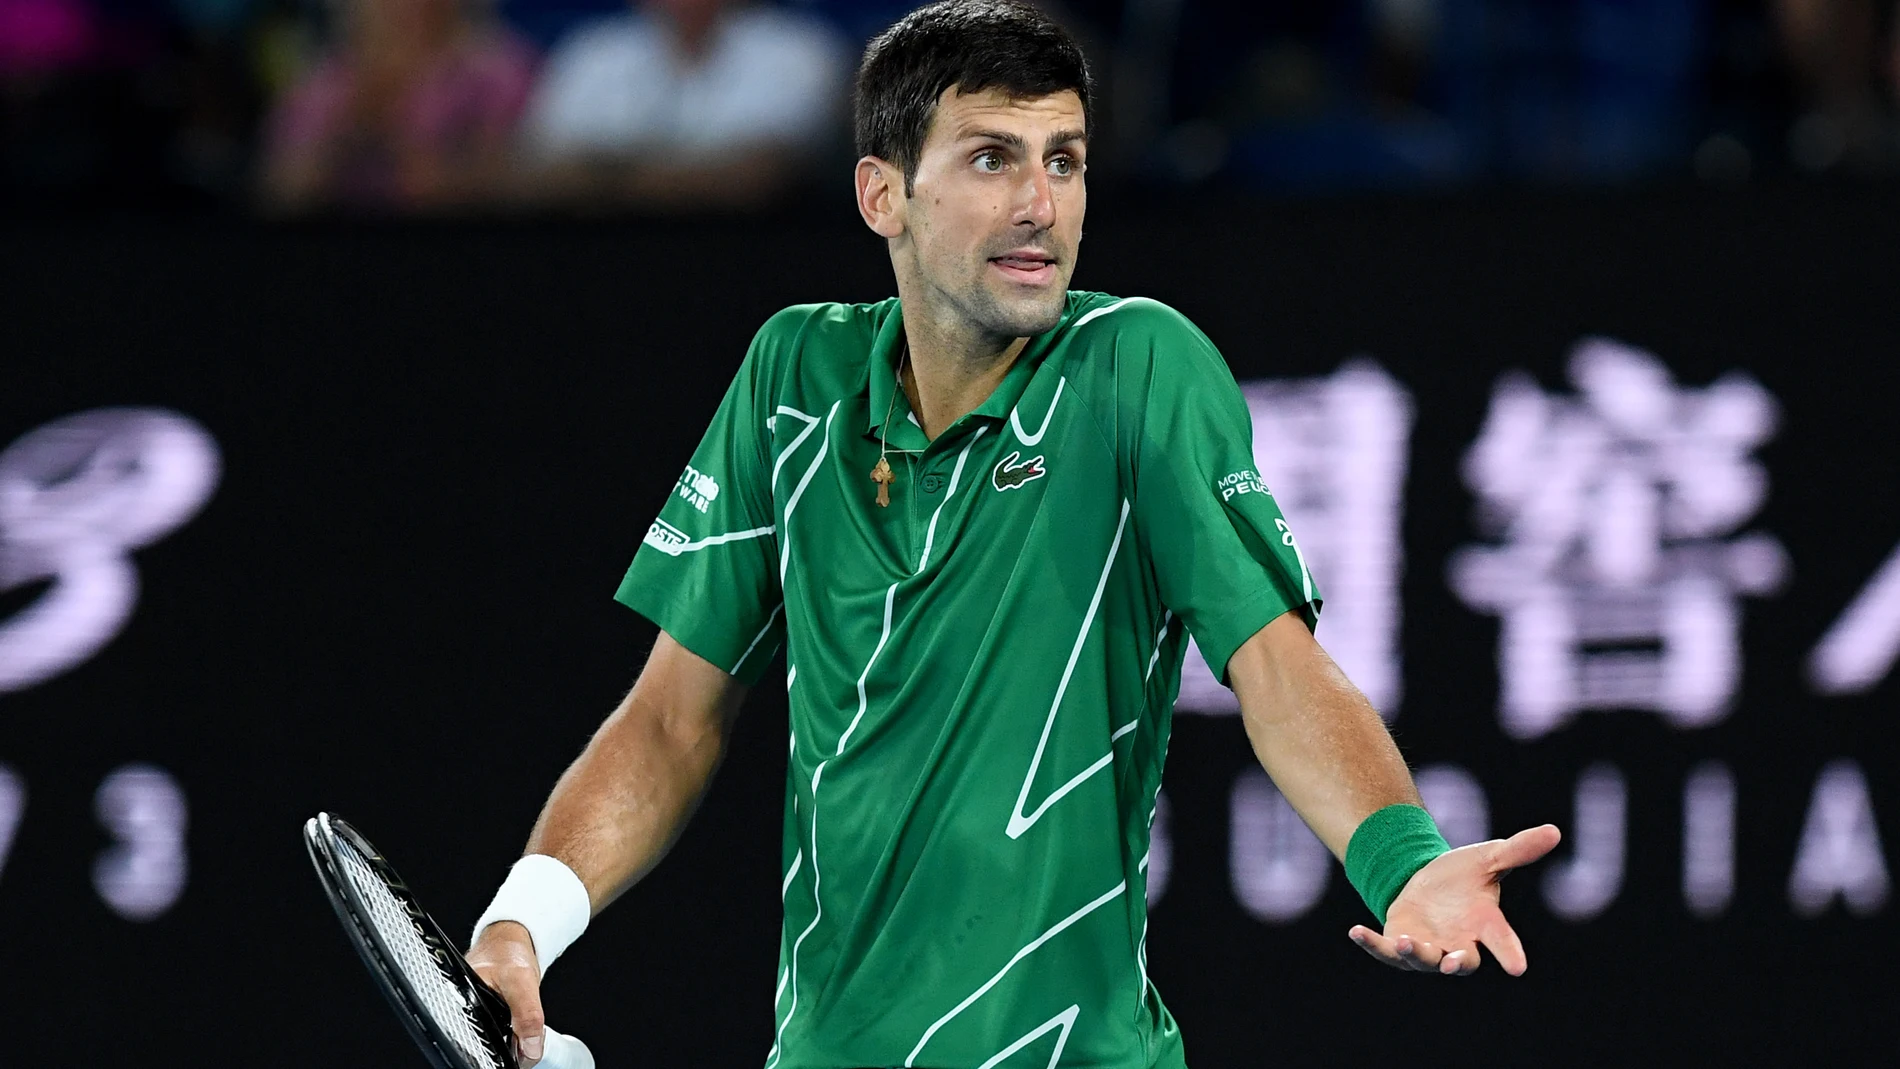 El Gobierno australiano cancela el visado de Djokovic y le obliga a volver a casa